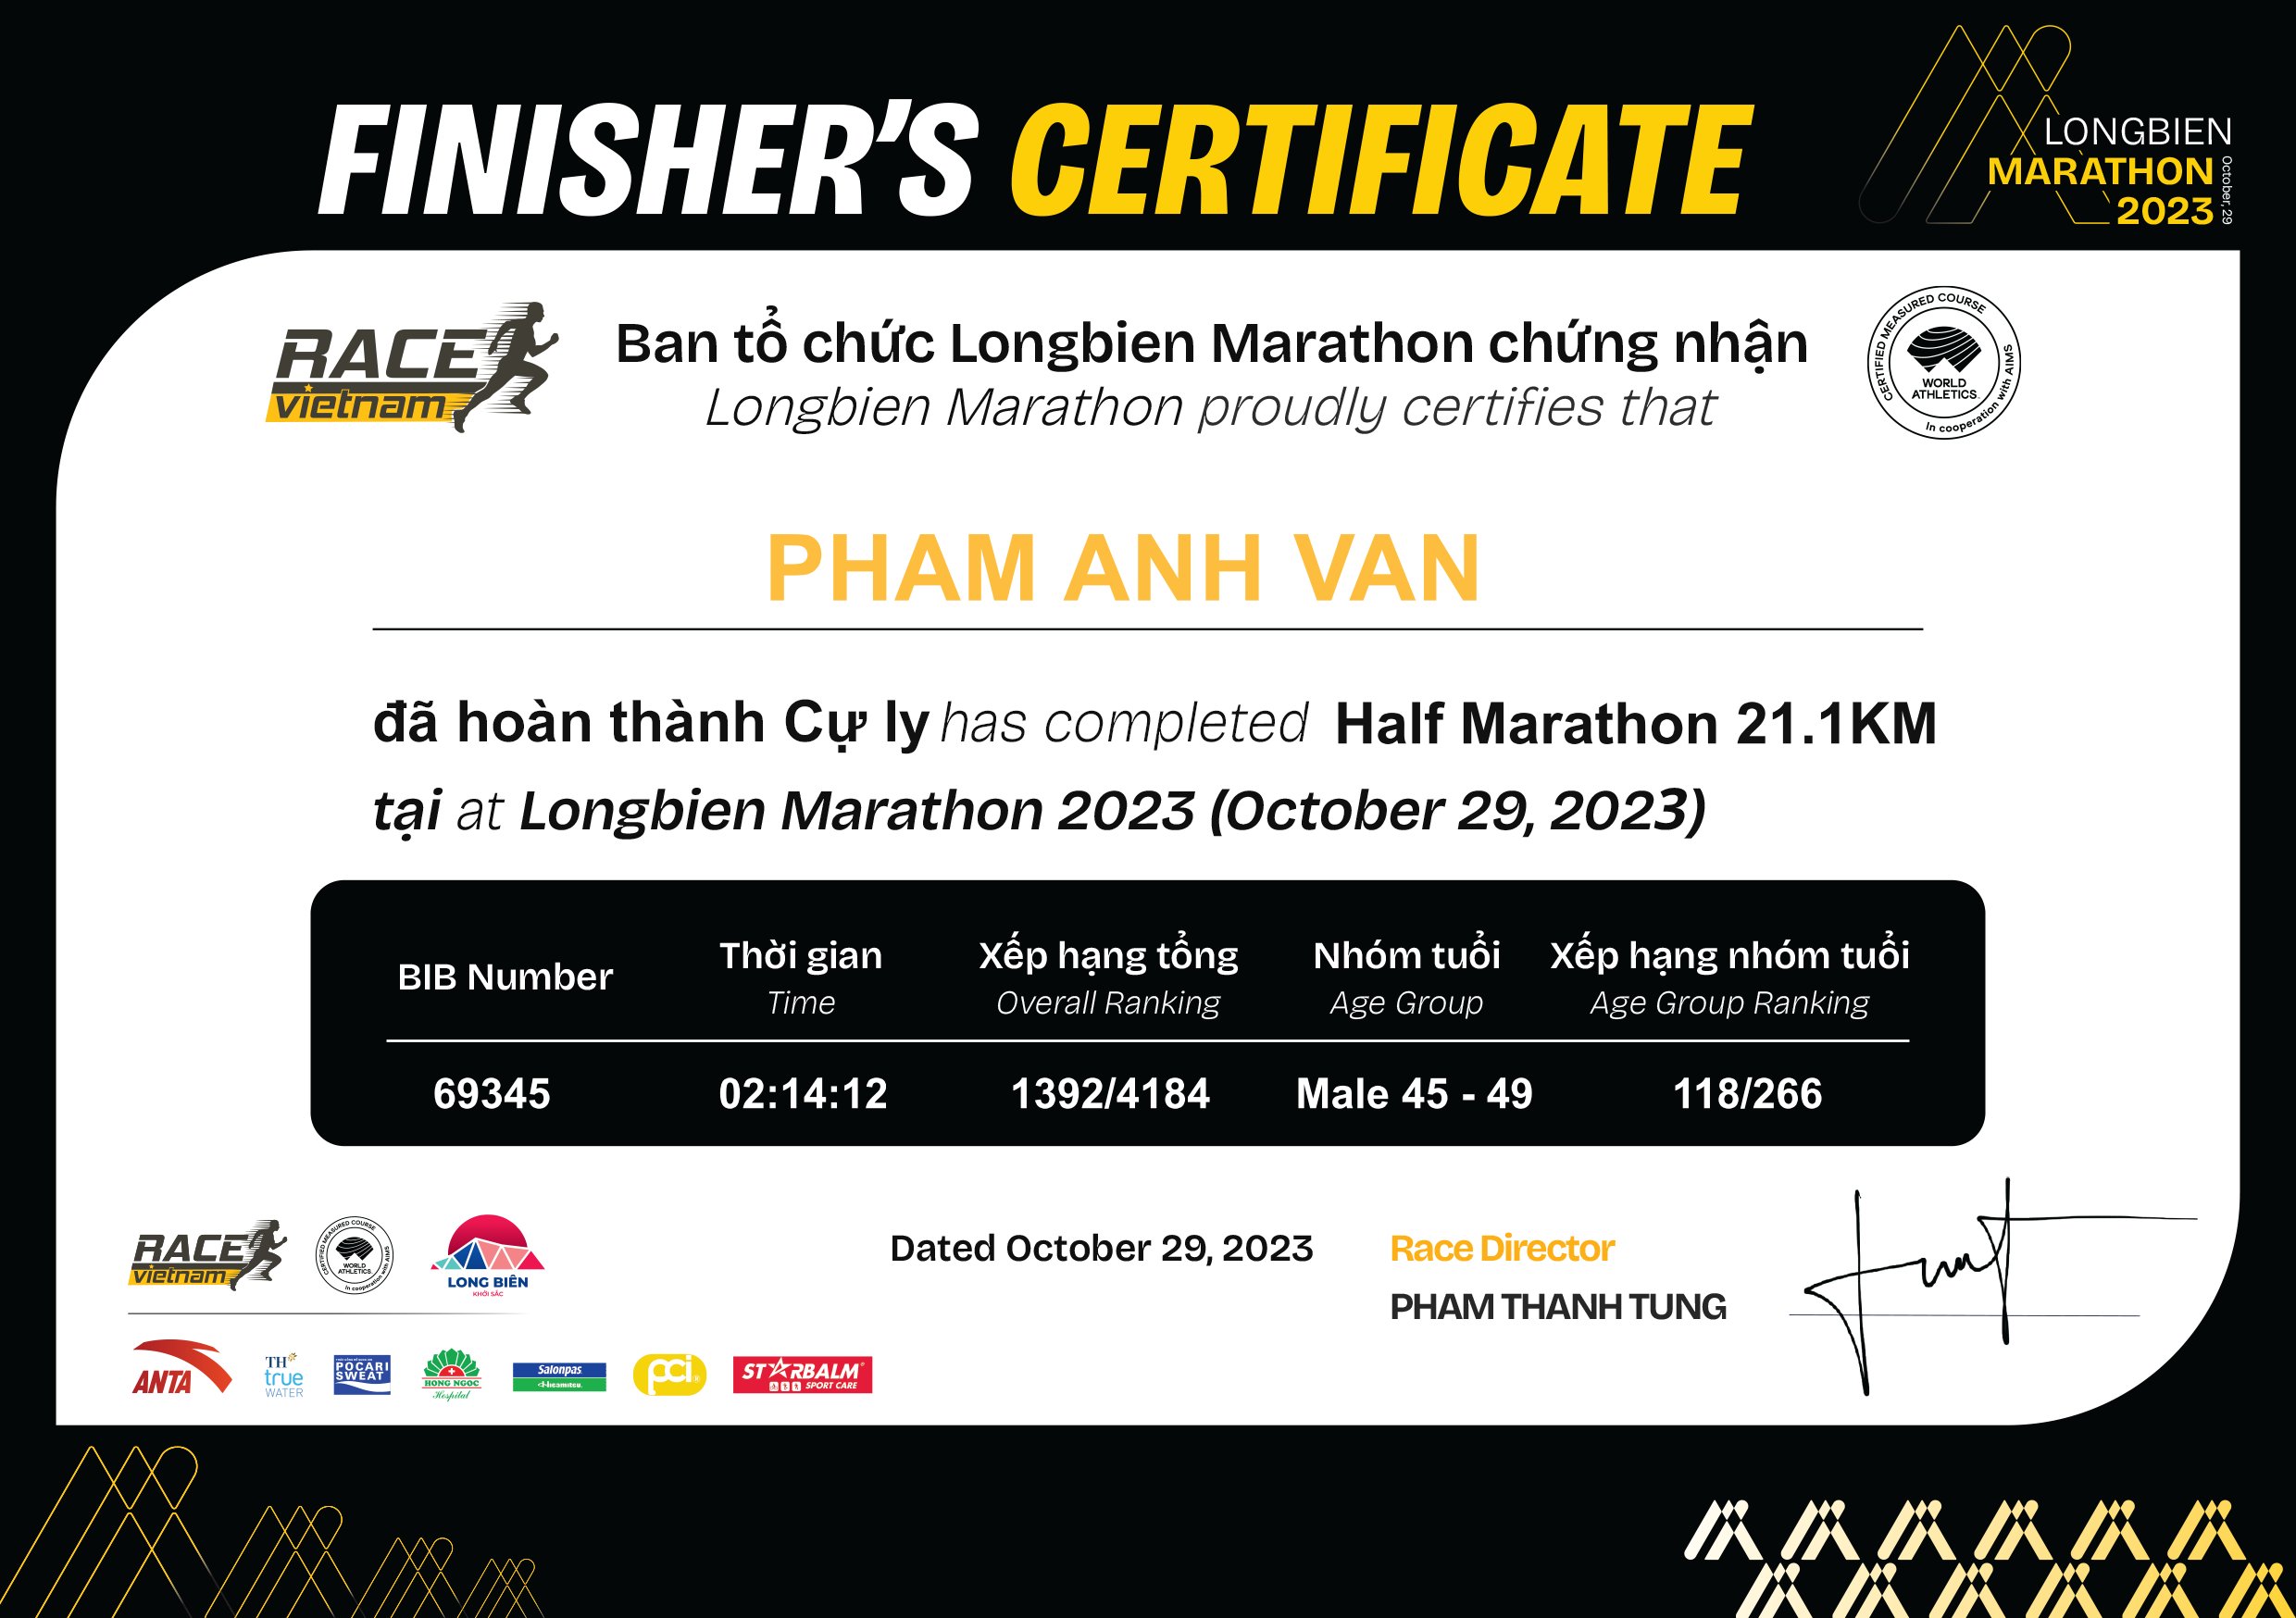 69345 - Pham Anh Van